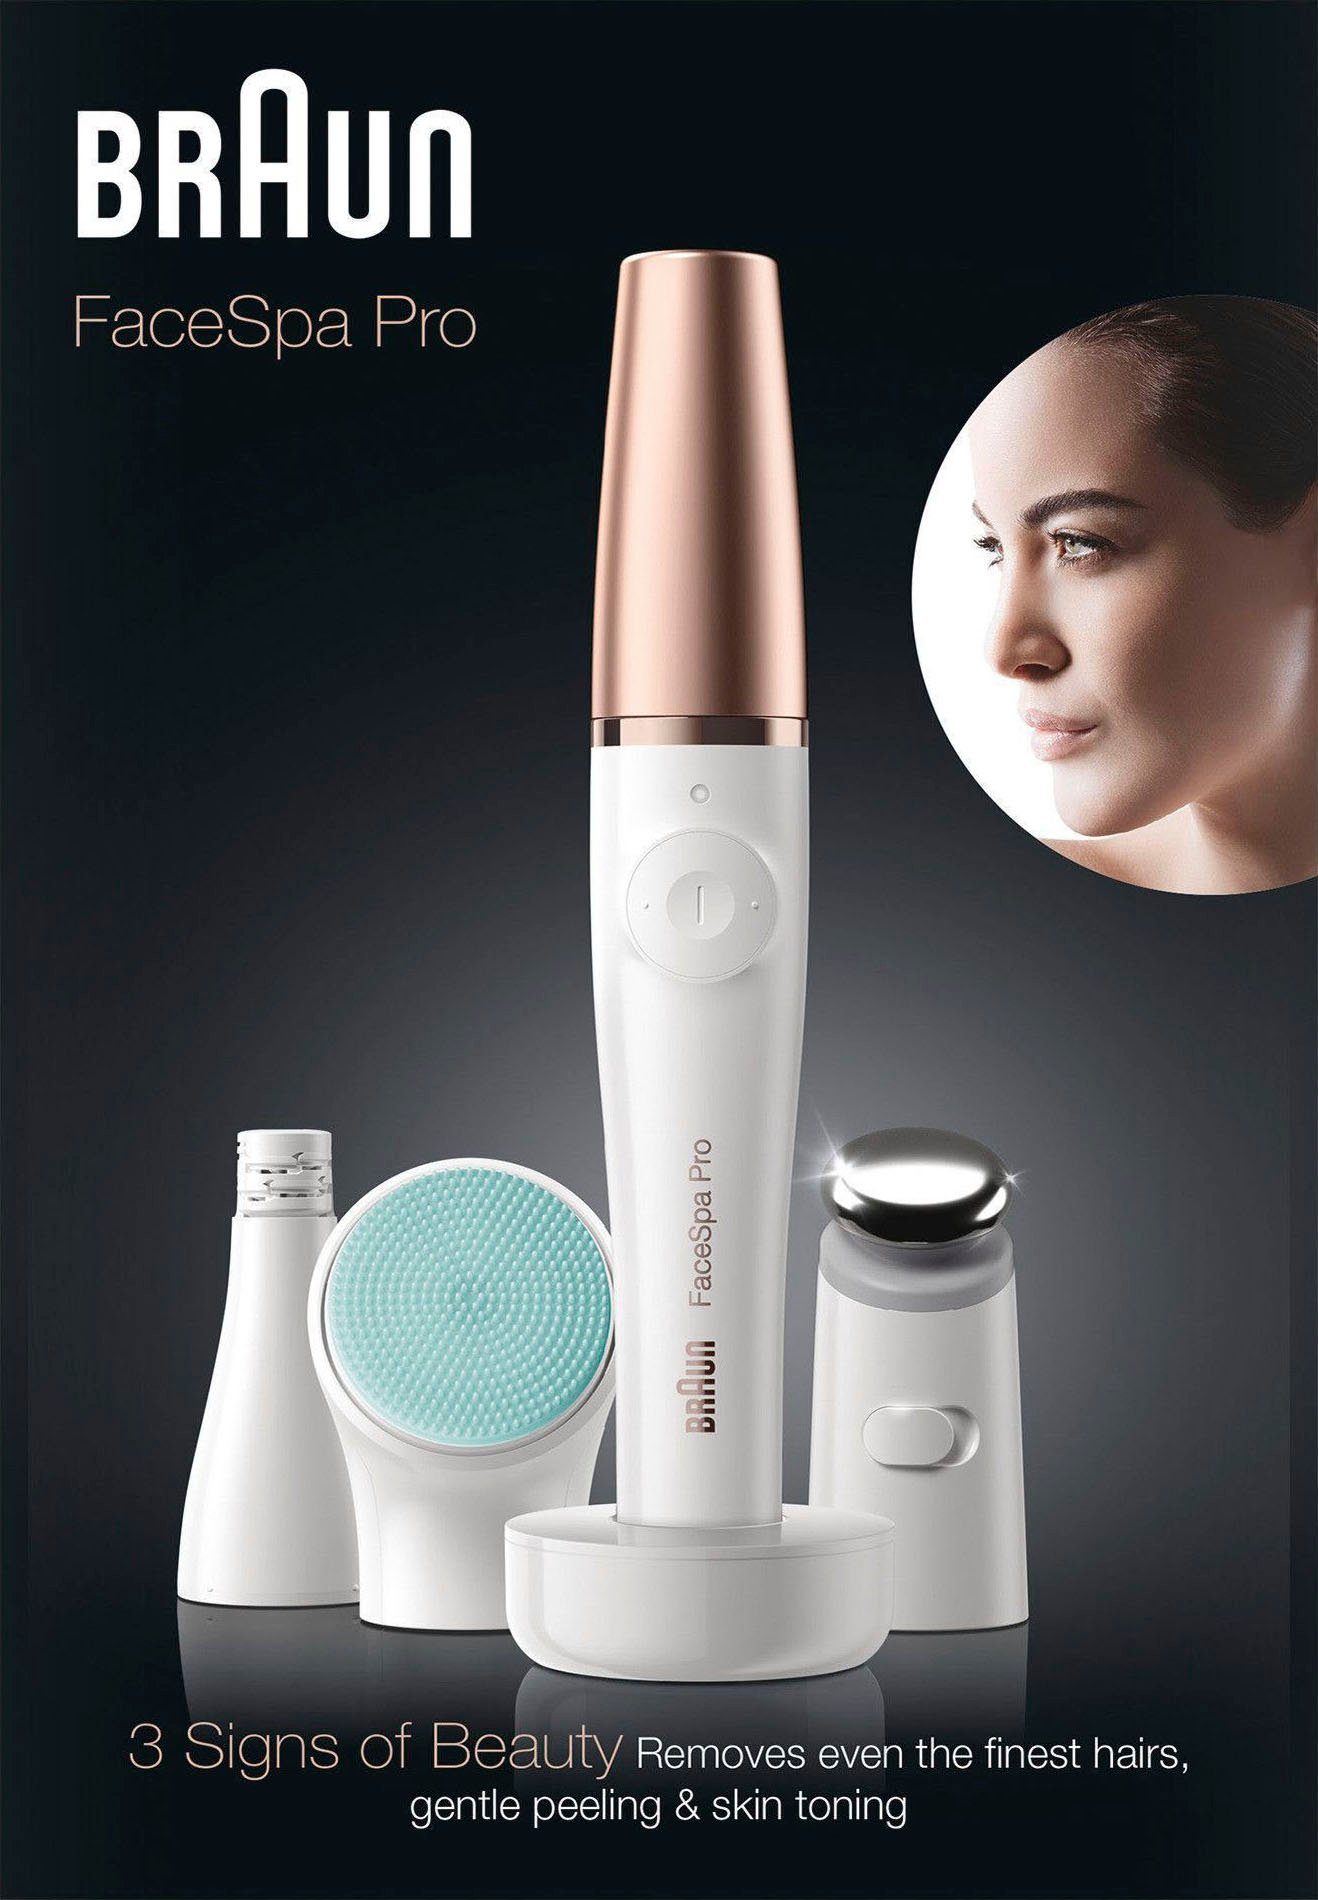 Braun Gesichtsepilierer FaceSpa Pro 913, Massagepad zur Vitalisierung der  Gesichtshaut für eine sanftere Haut